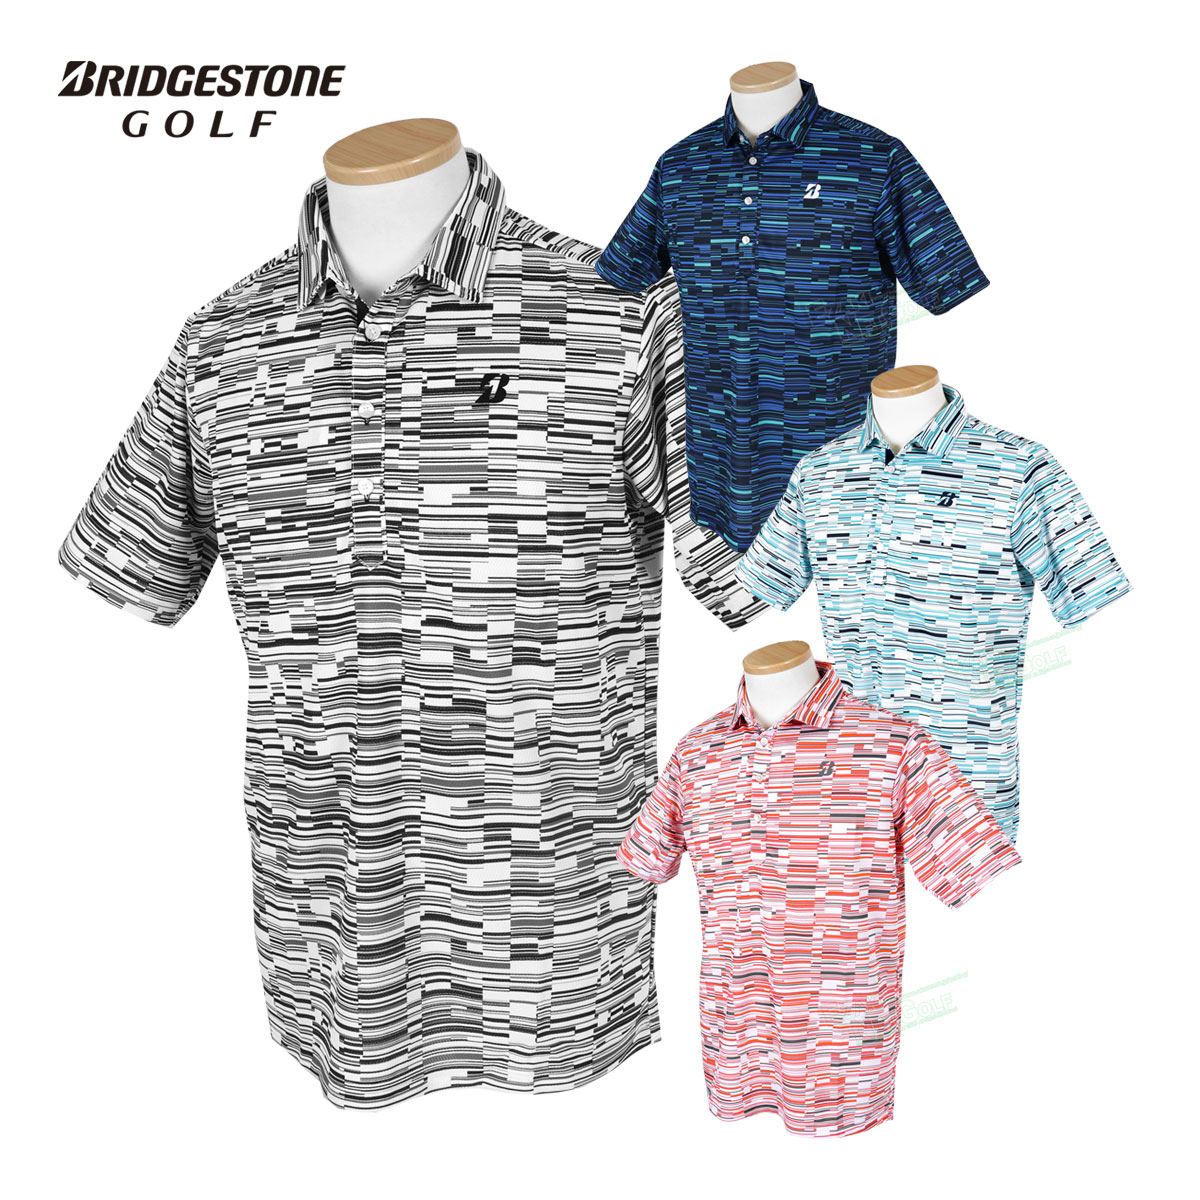 BridgestoneGolf ブリヂストンゴルフ ゴルフウエア 半袖シャツ 「 3GY03A 」 共衿シャツ 2023春夏モデル 